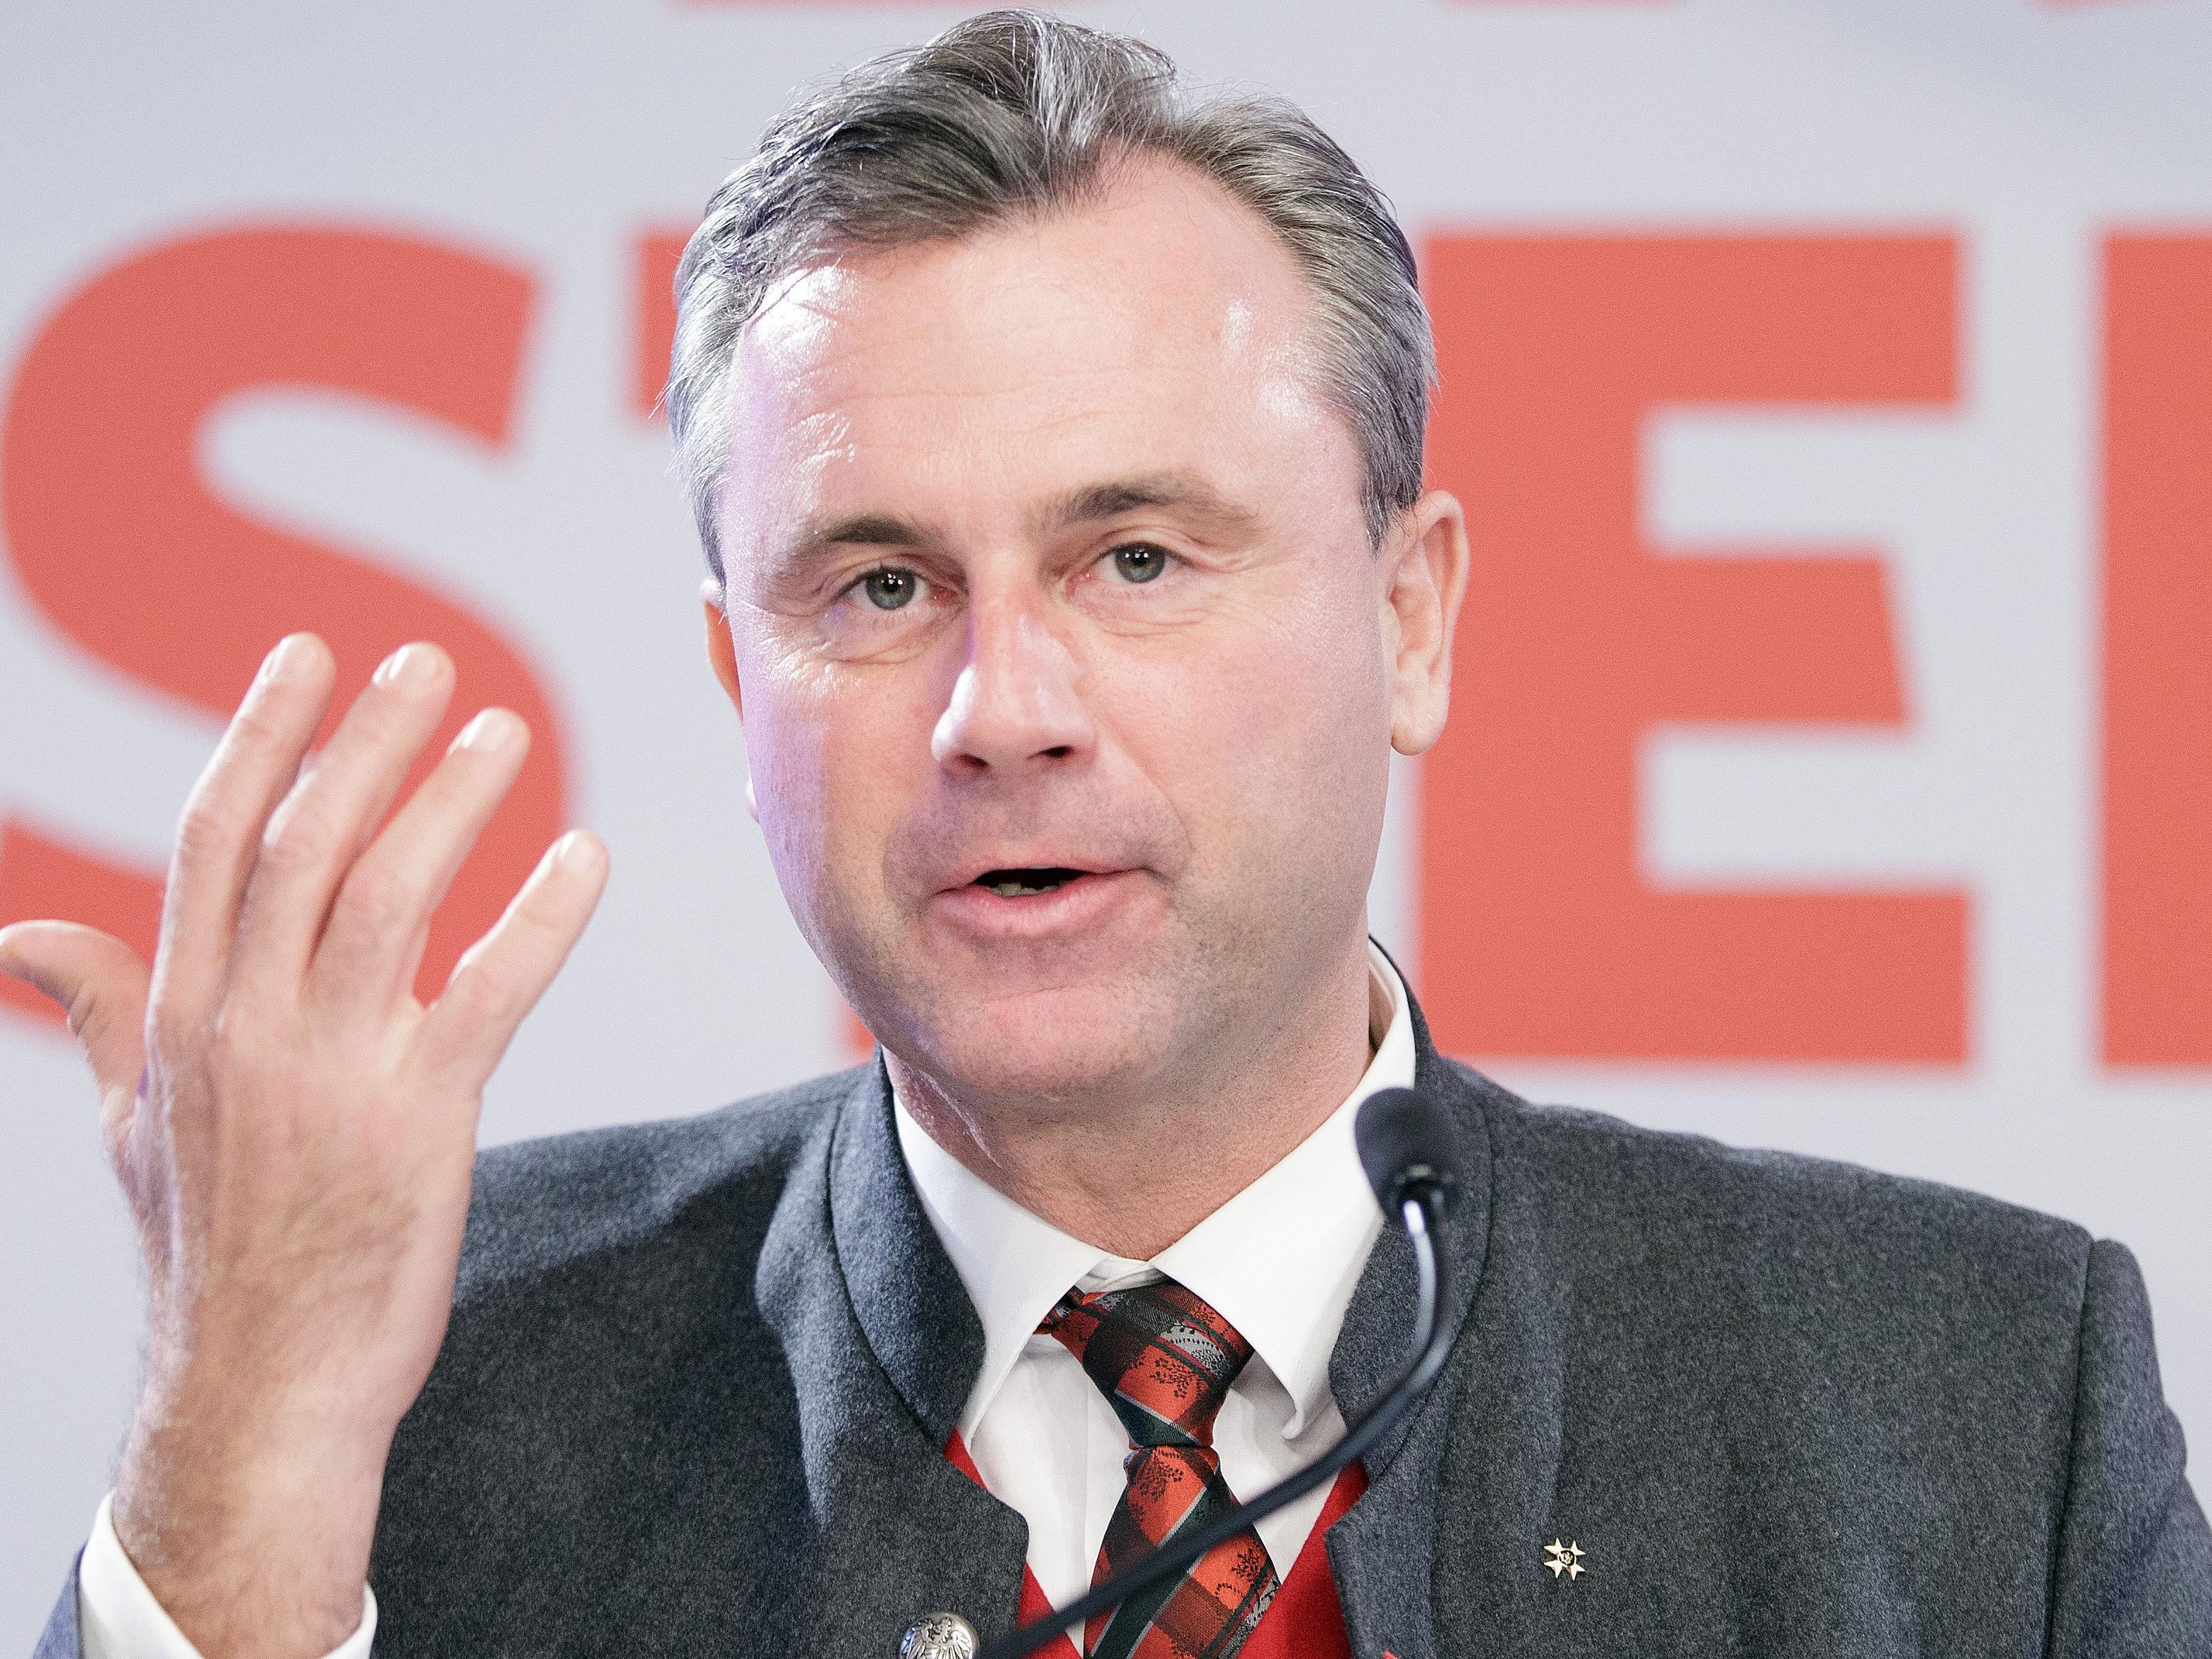 "Nach der Wahl ist vor der Wahl" meinte der Dritte Nationalratspräsident Norbert Hofer